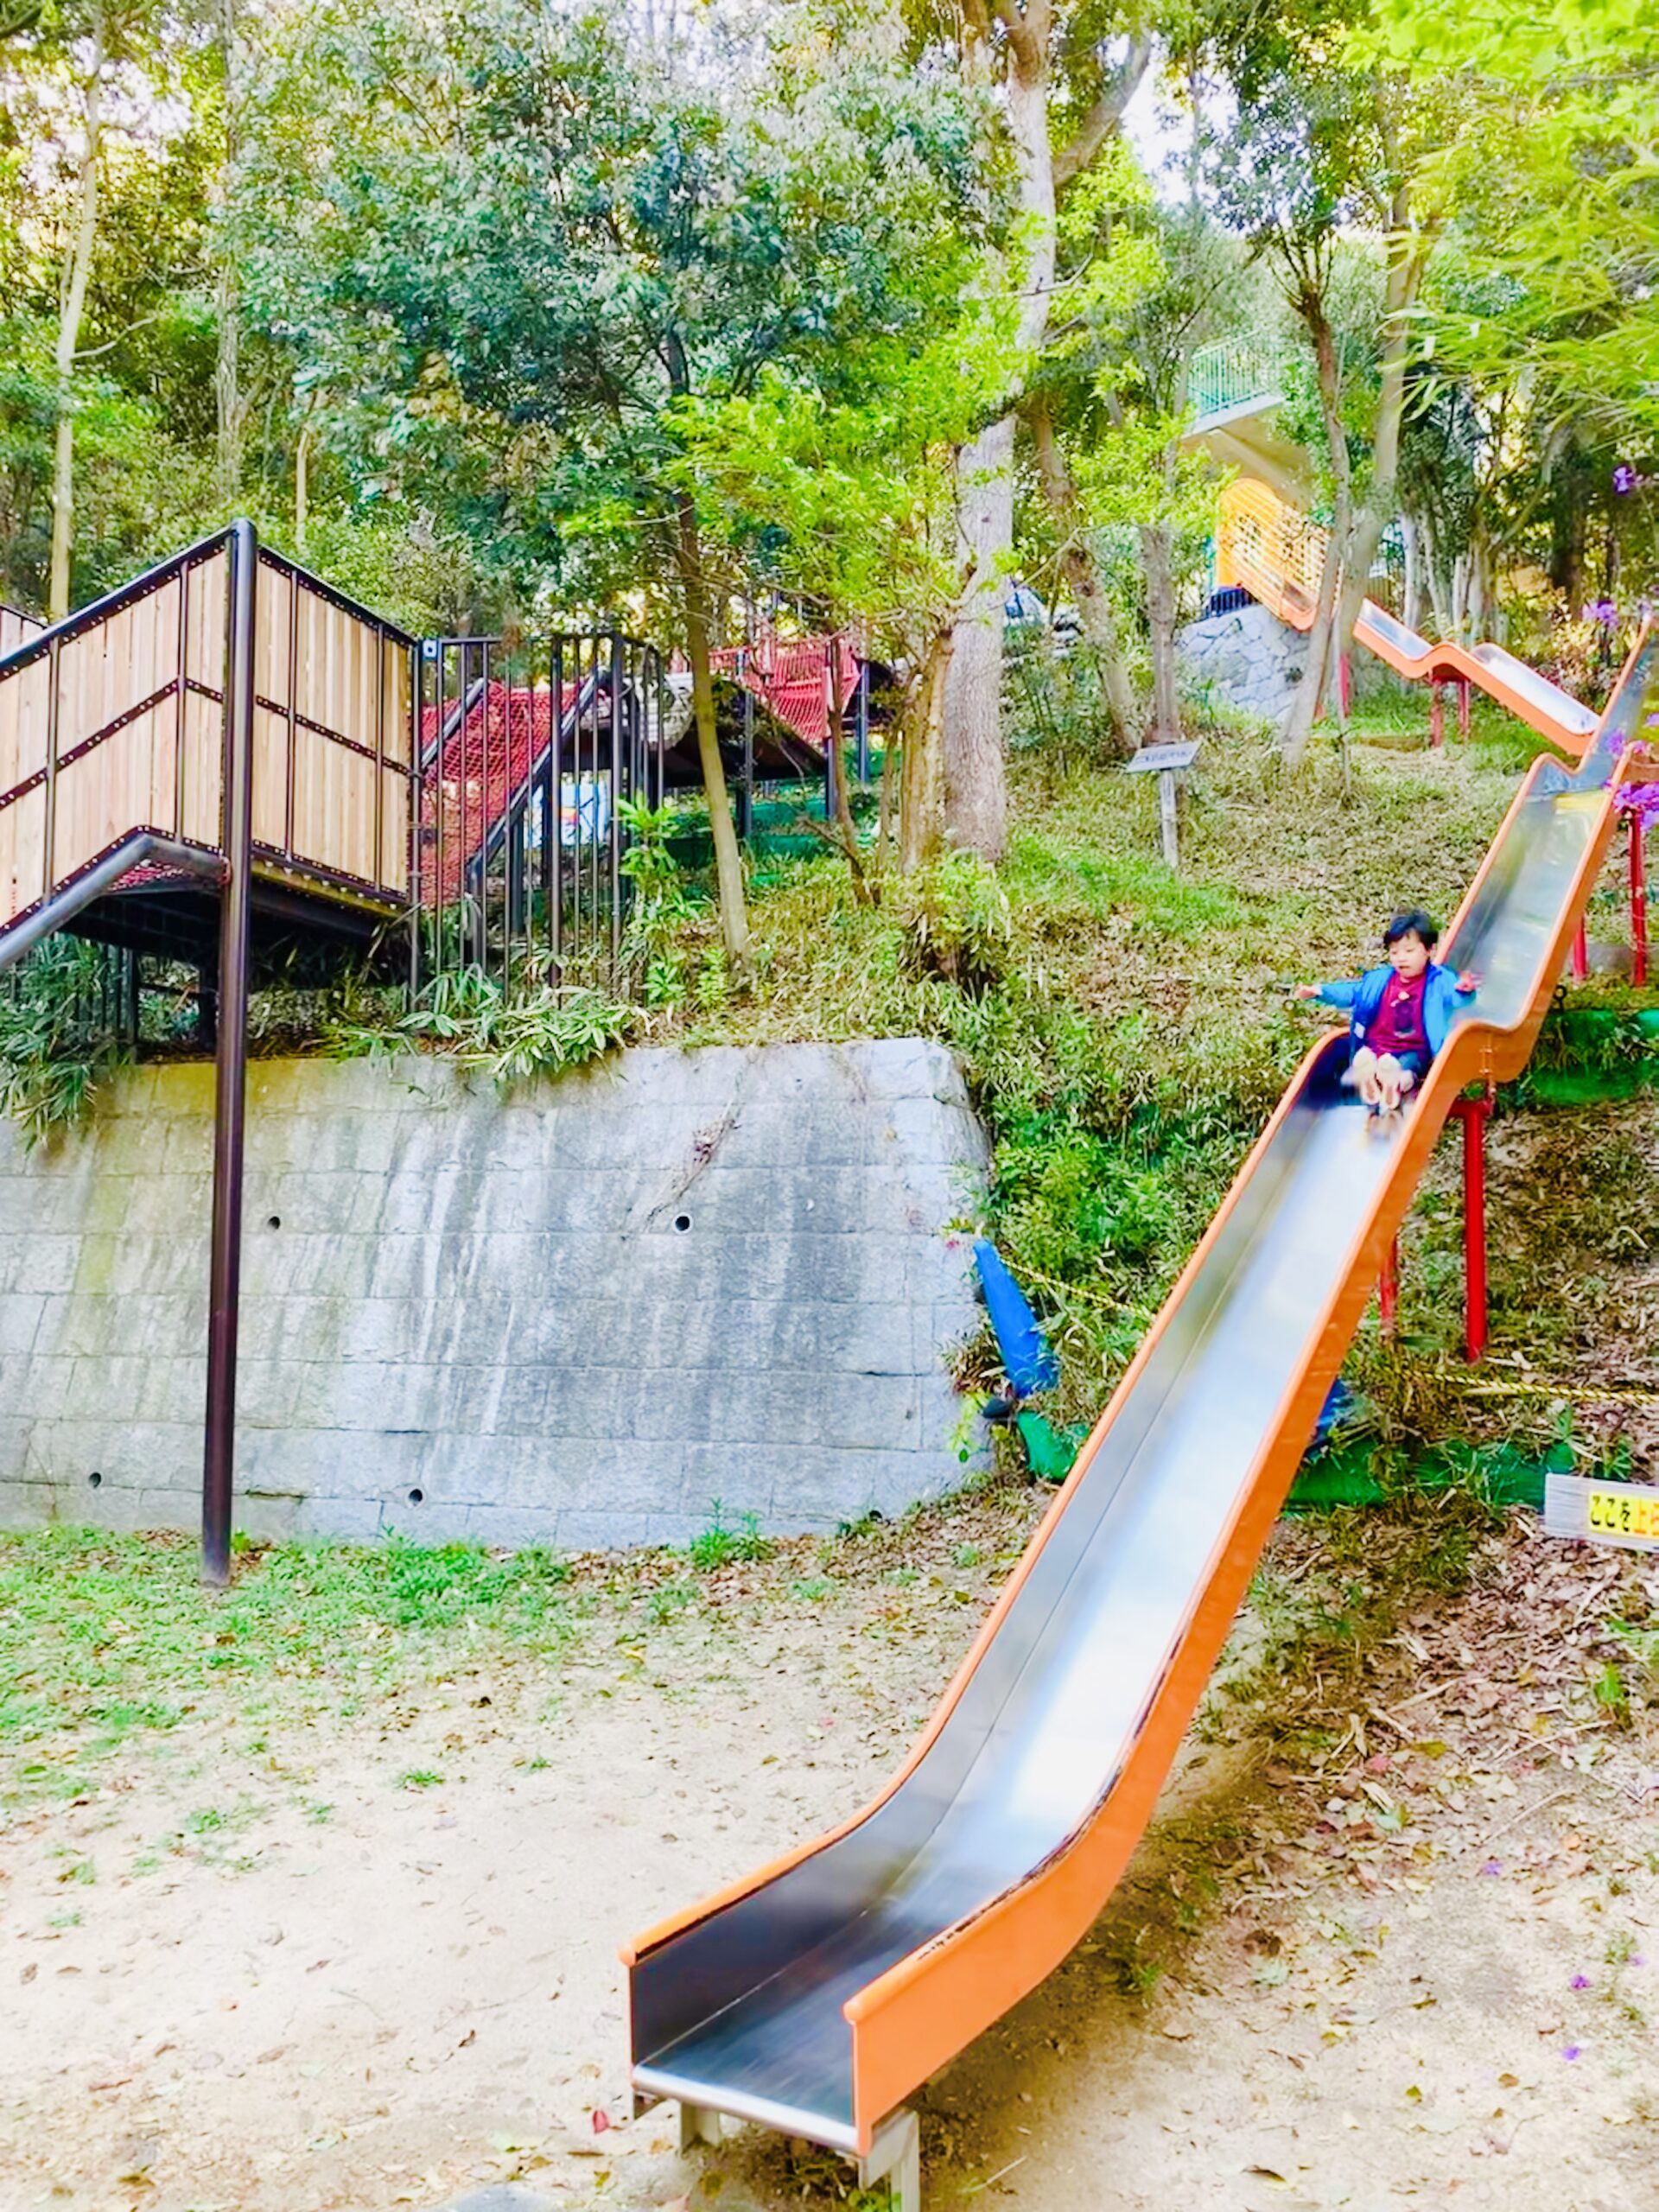 神戸市立須磨離宮公園 子供の森冒険コースのフィールドアスレチックは子どもたちにお気に入りの遊びスポット とーるブログ